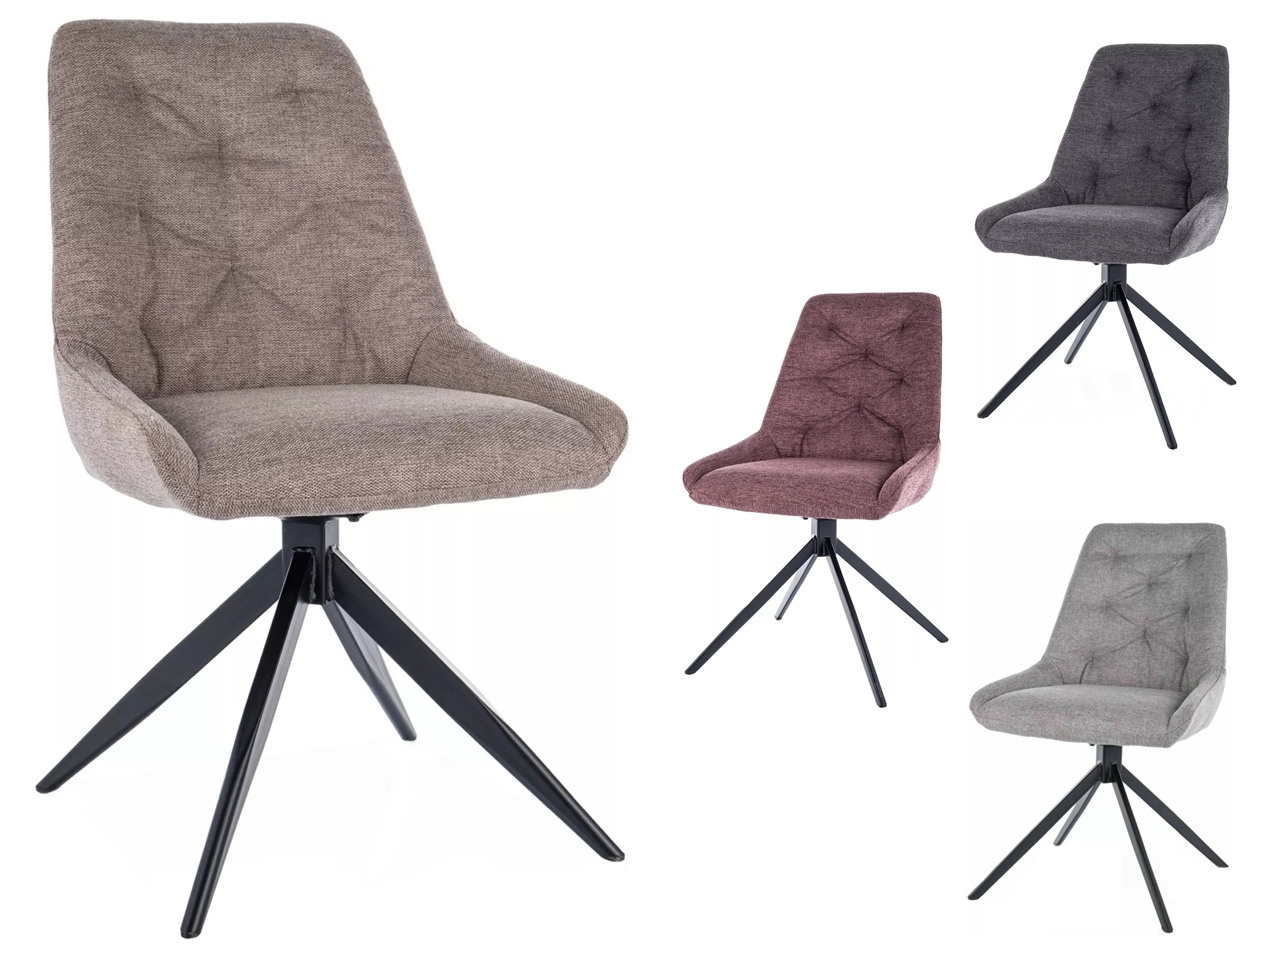 SIG-Asti Brego modern fémvázas szék